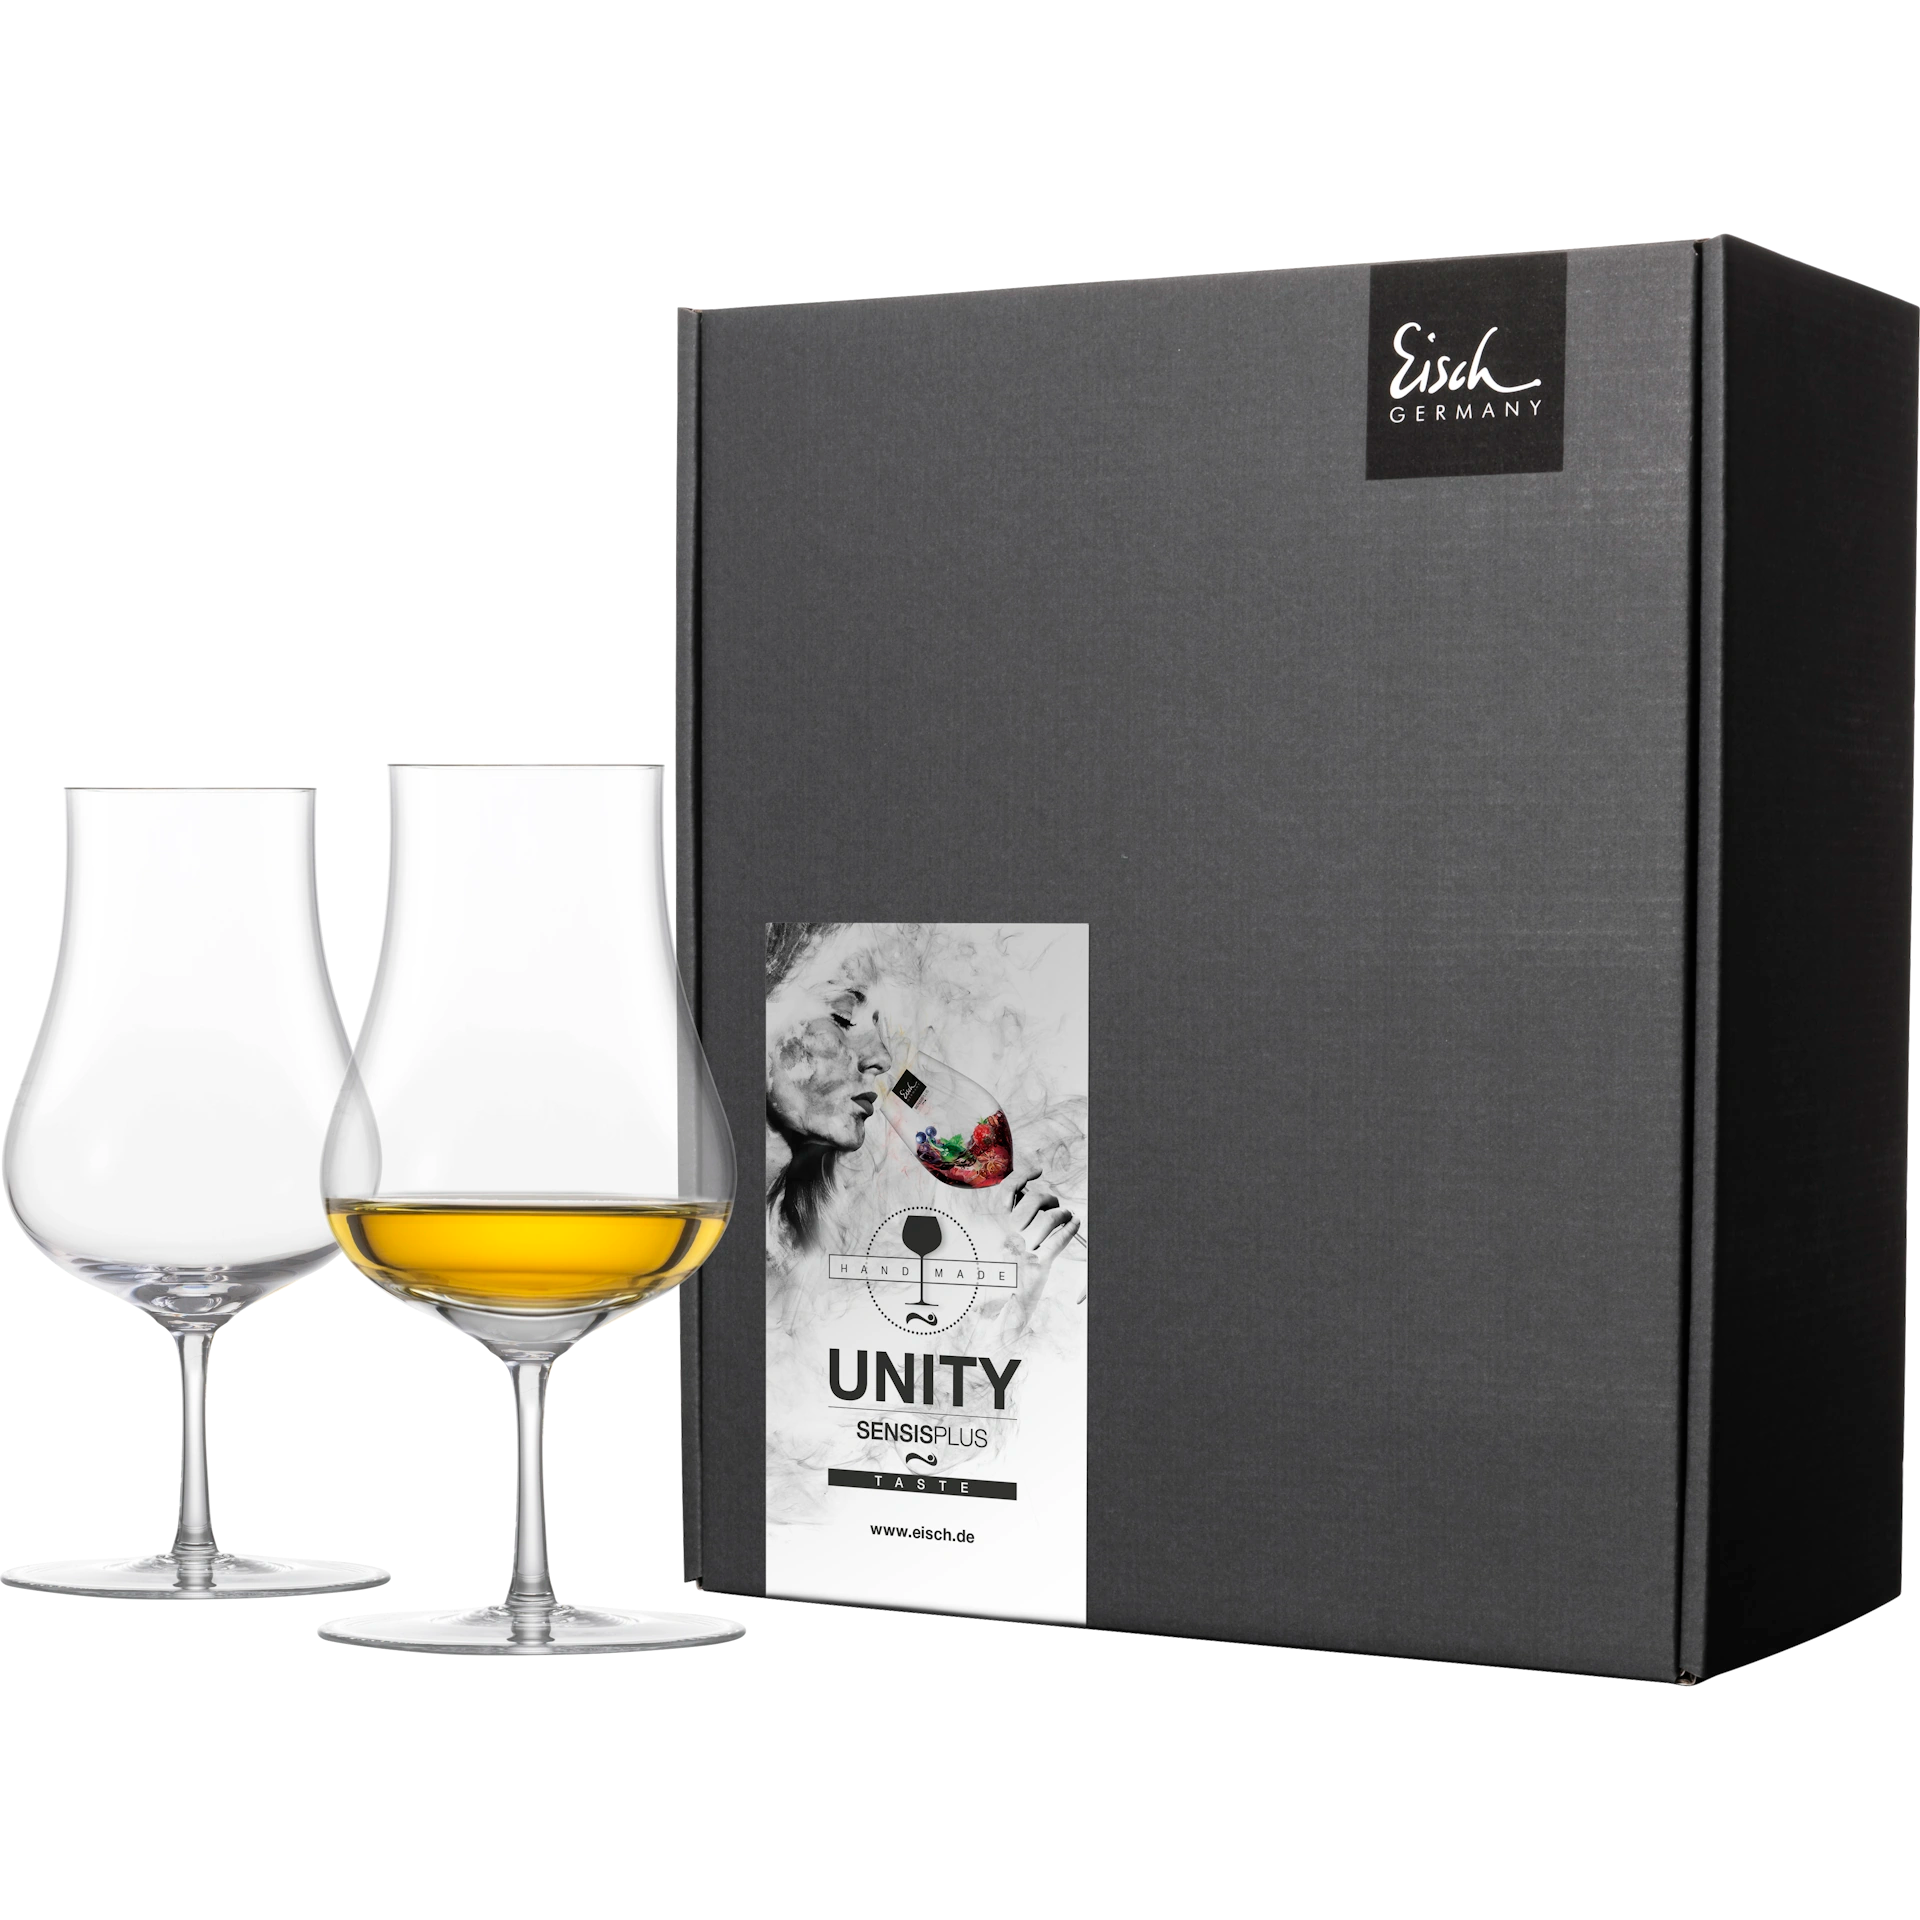 Eisch Malt Whiskyglas Unity SENSISPLUS - 2 Stück im Geschenkkarton 522/213 transparent